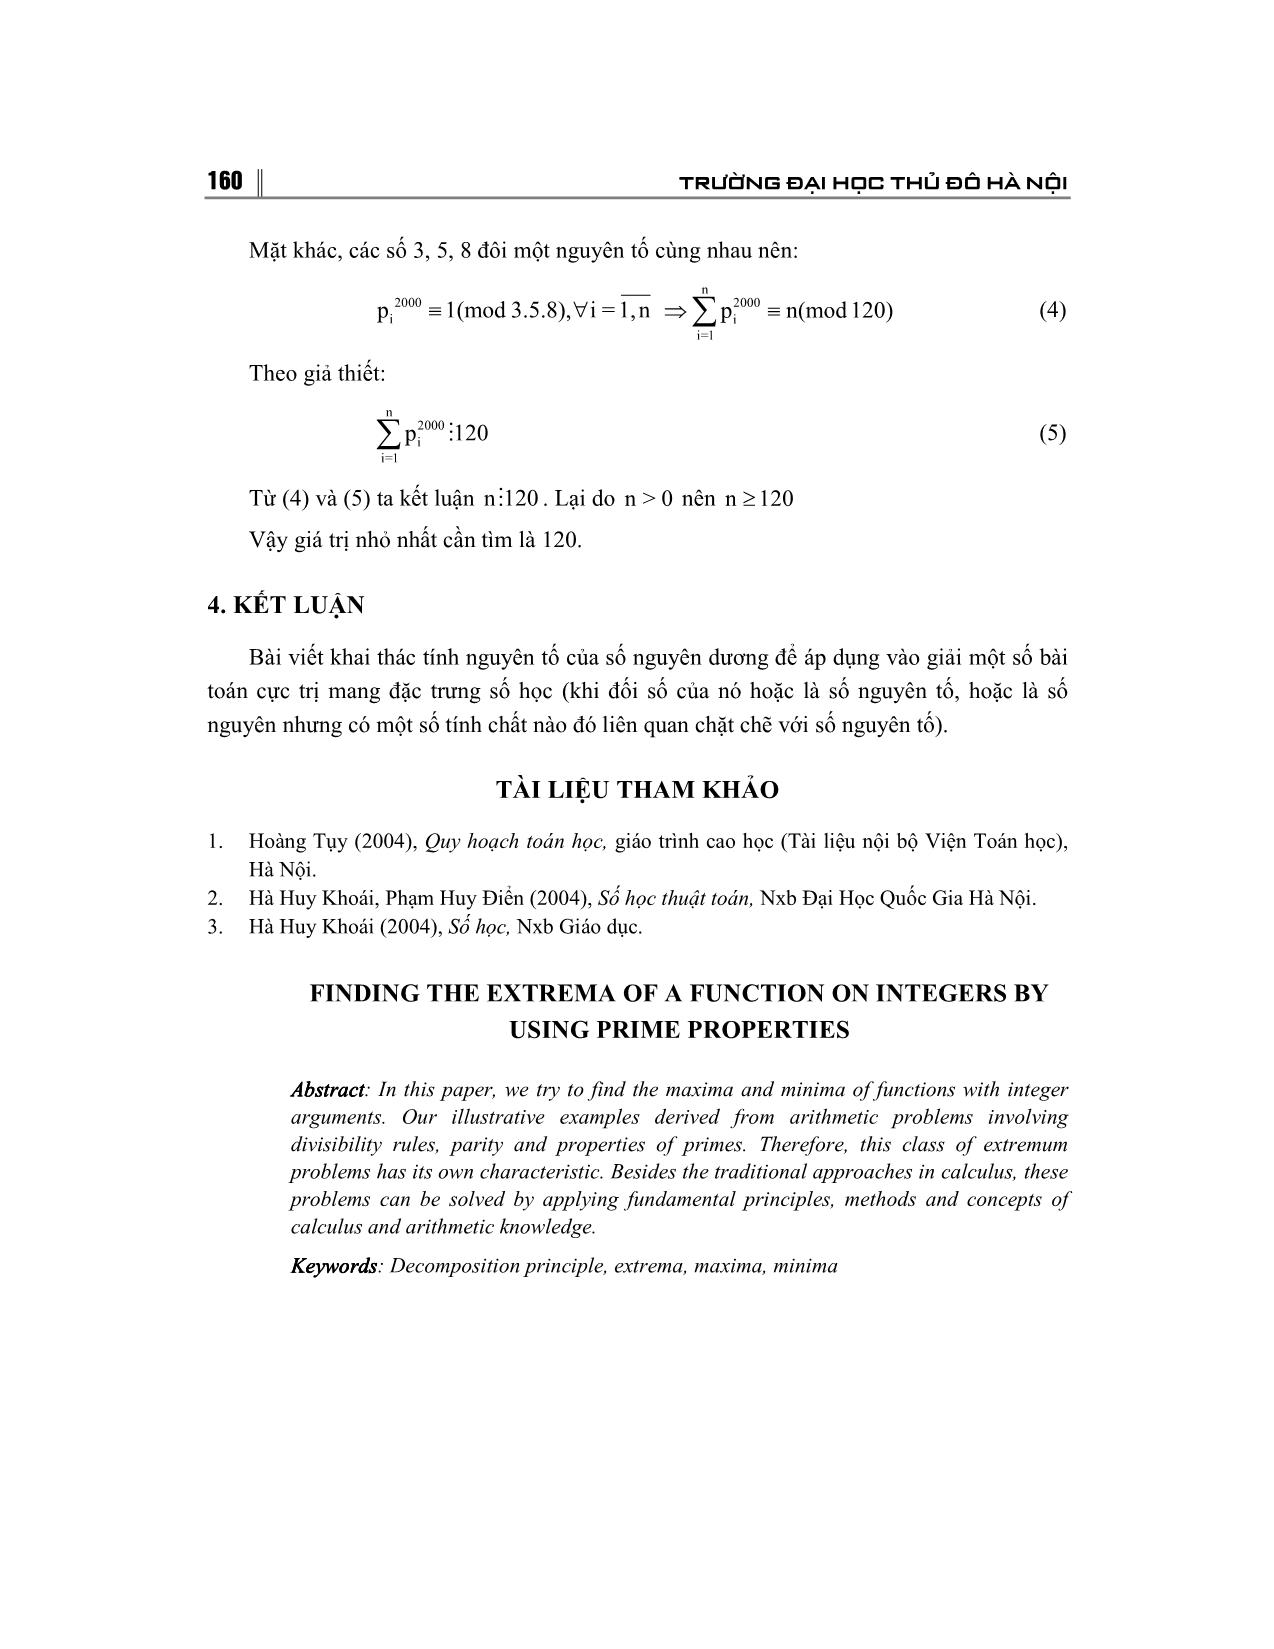 Sử dụng tính nguyên tố để giải bài toán cực trị trên tập đối số nguyên trang 8